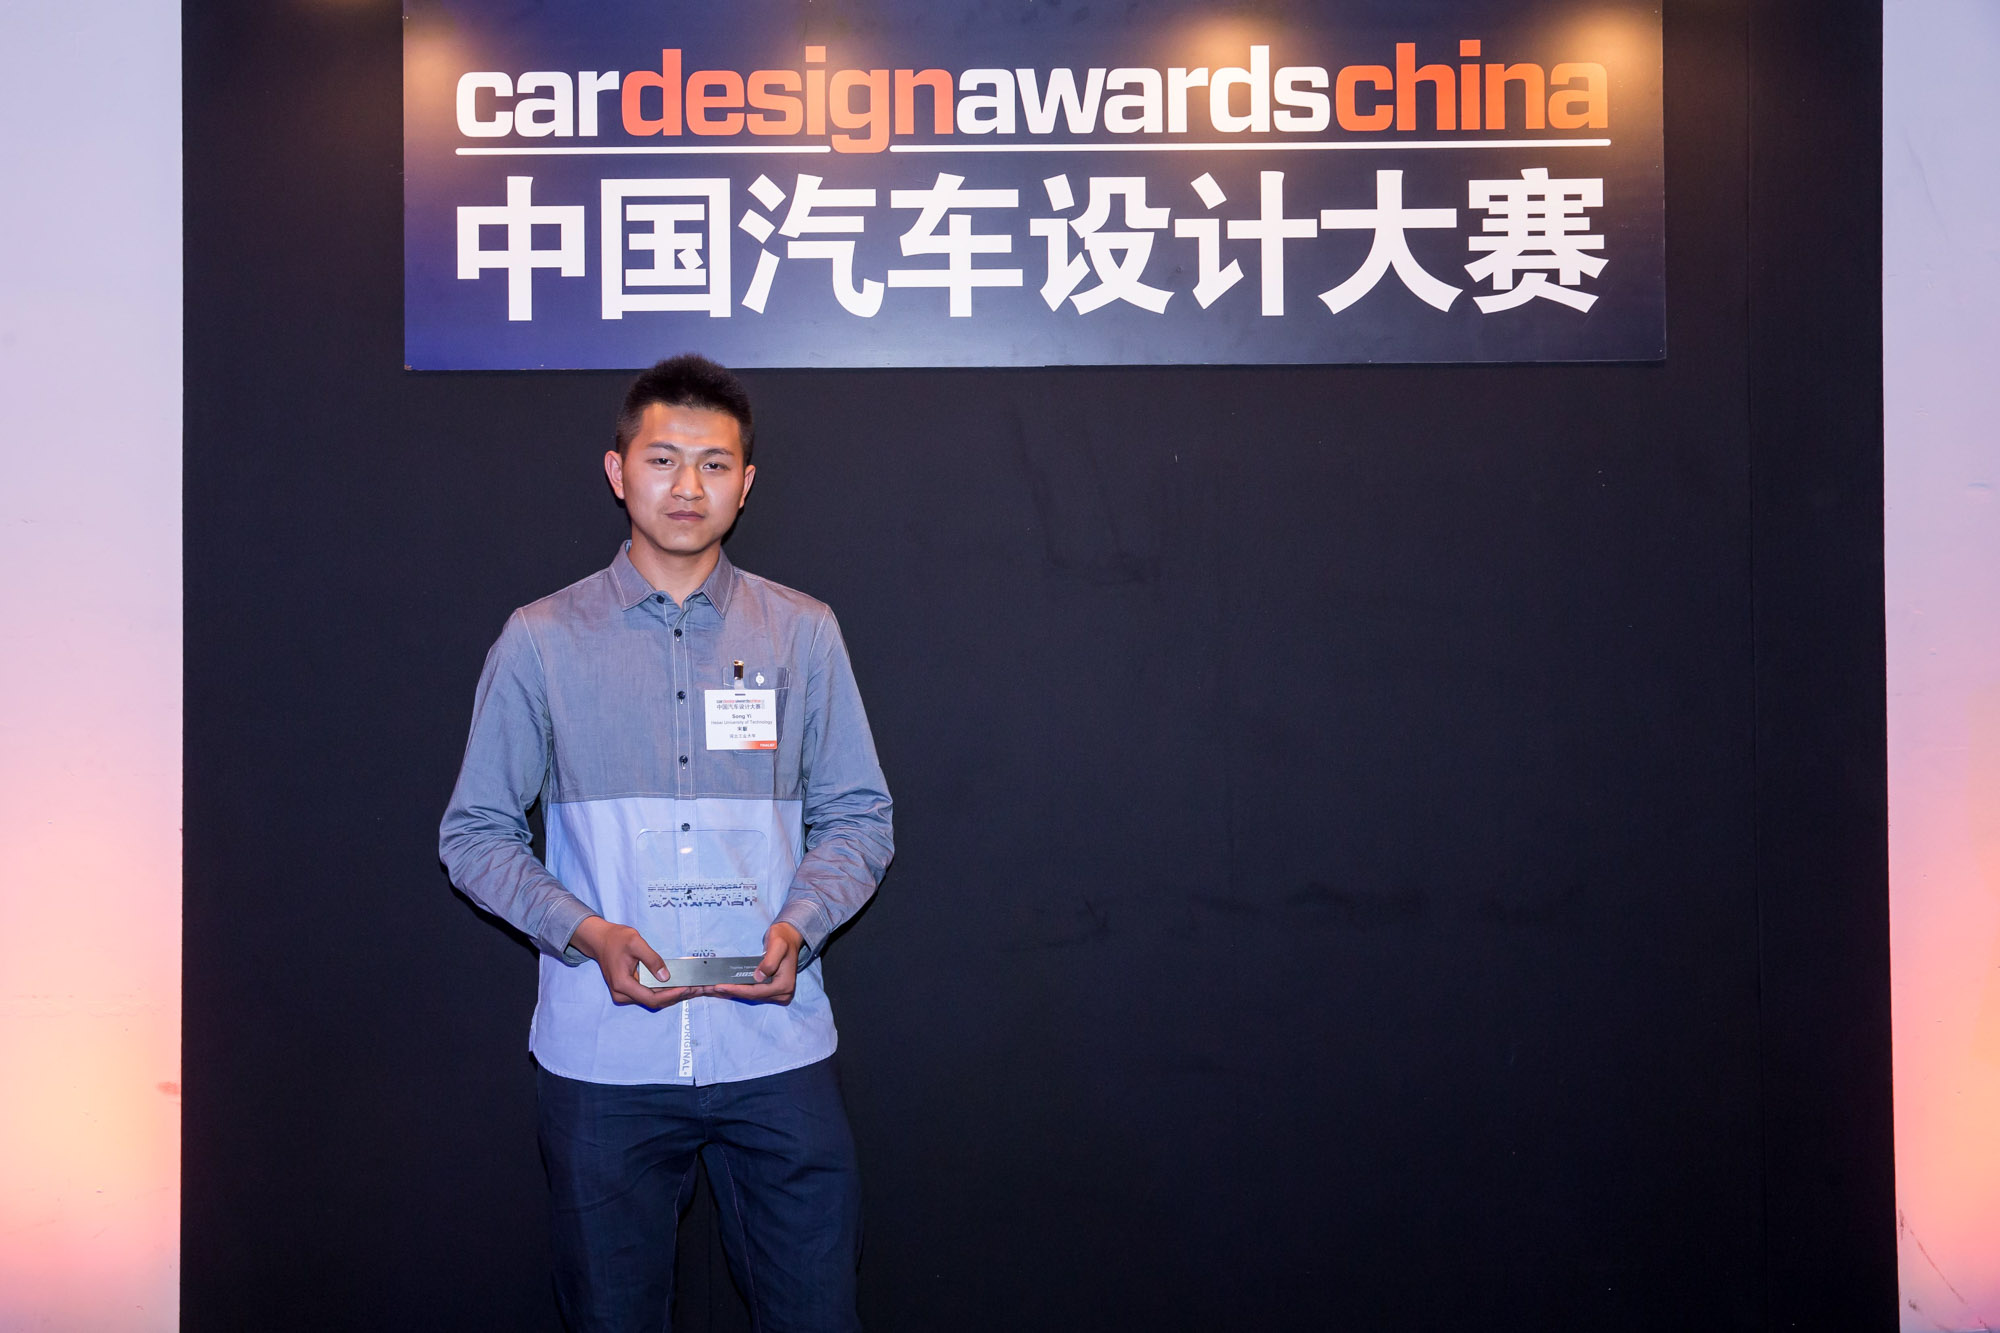 car-design-awards-china-event-7